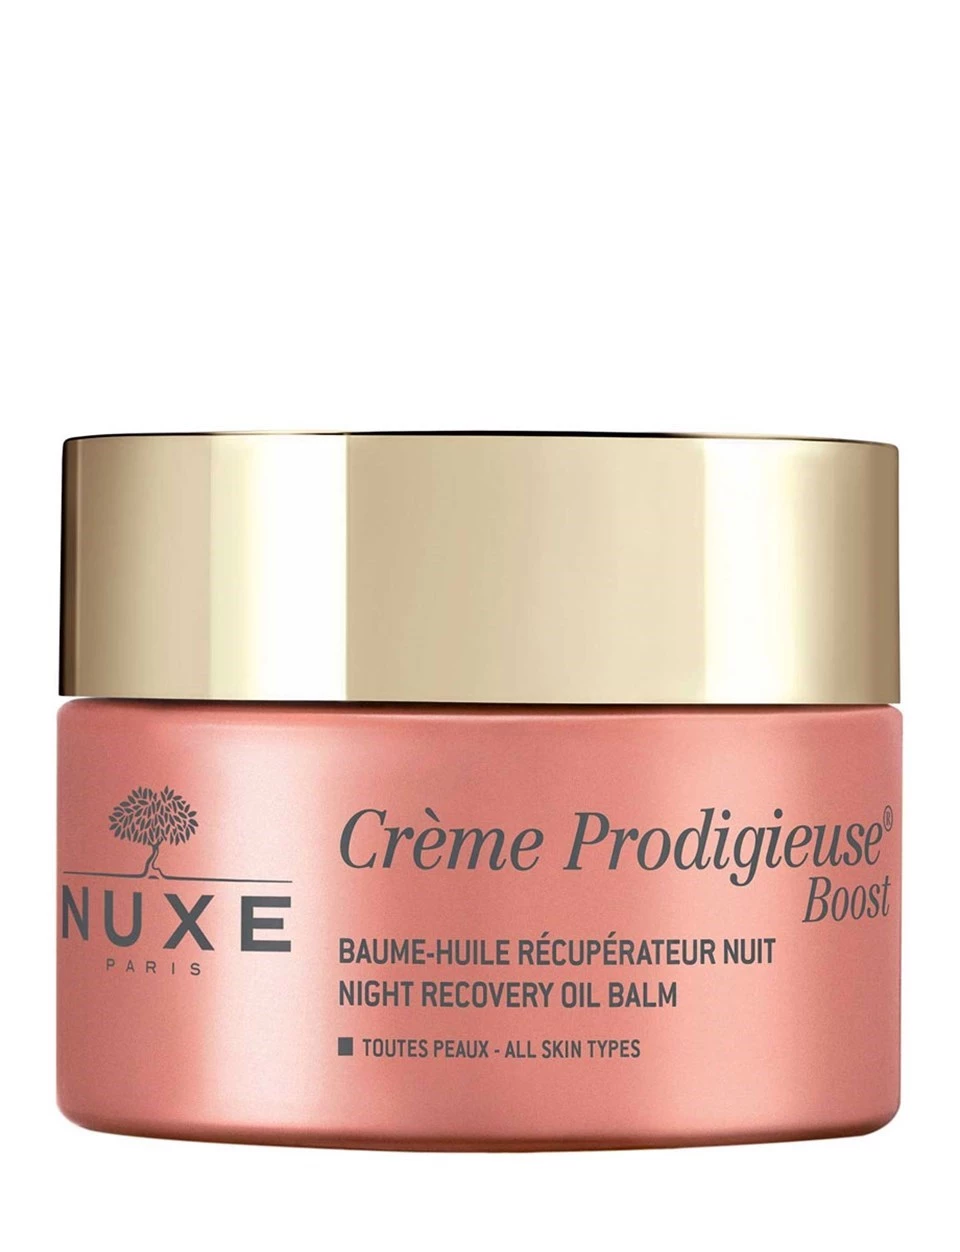 Nuxe Creme Prodigieuse Boost İyileştirici Cilt Bakım Gece Balsamı 50 ml